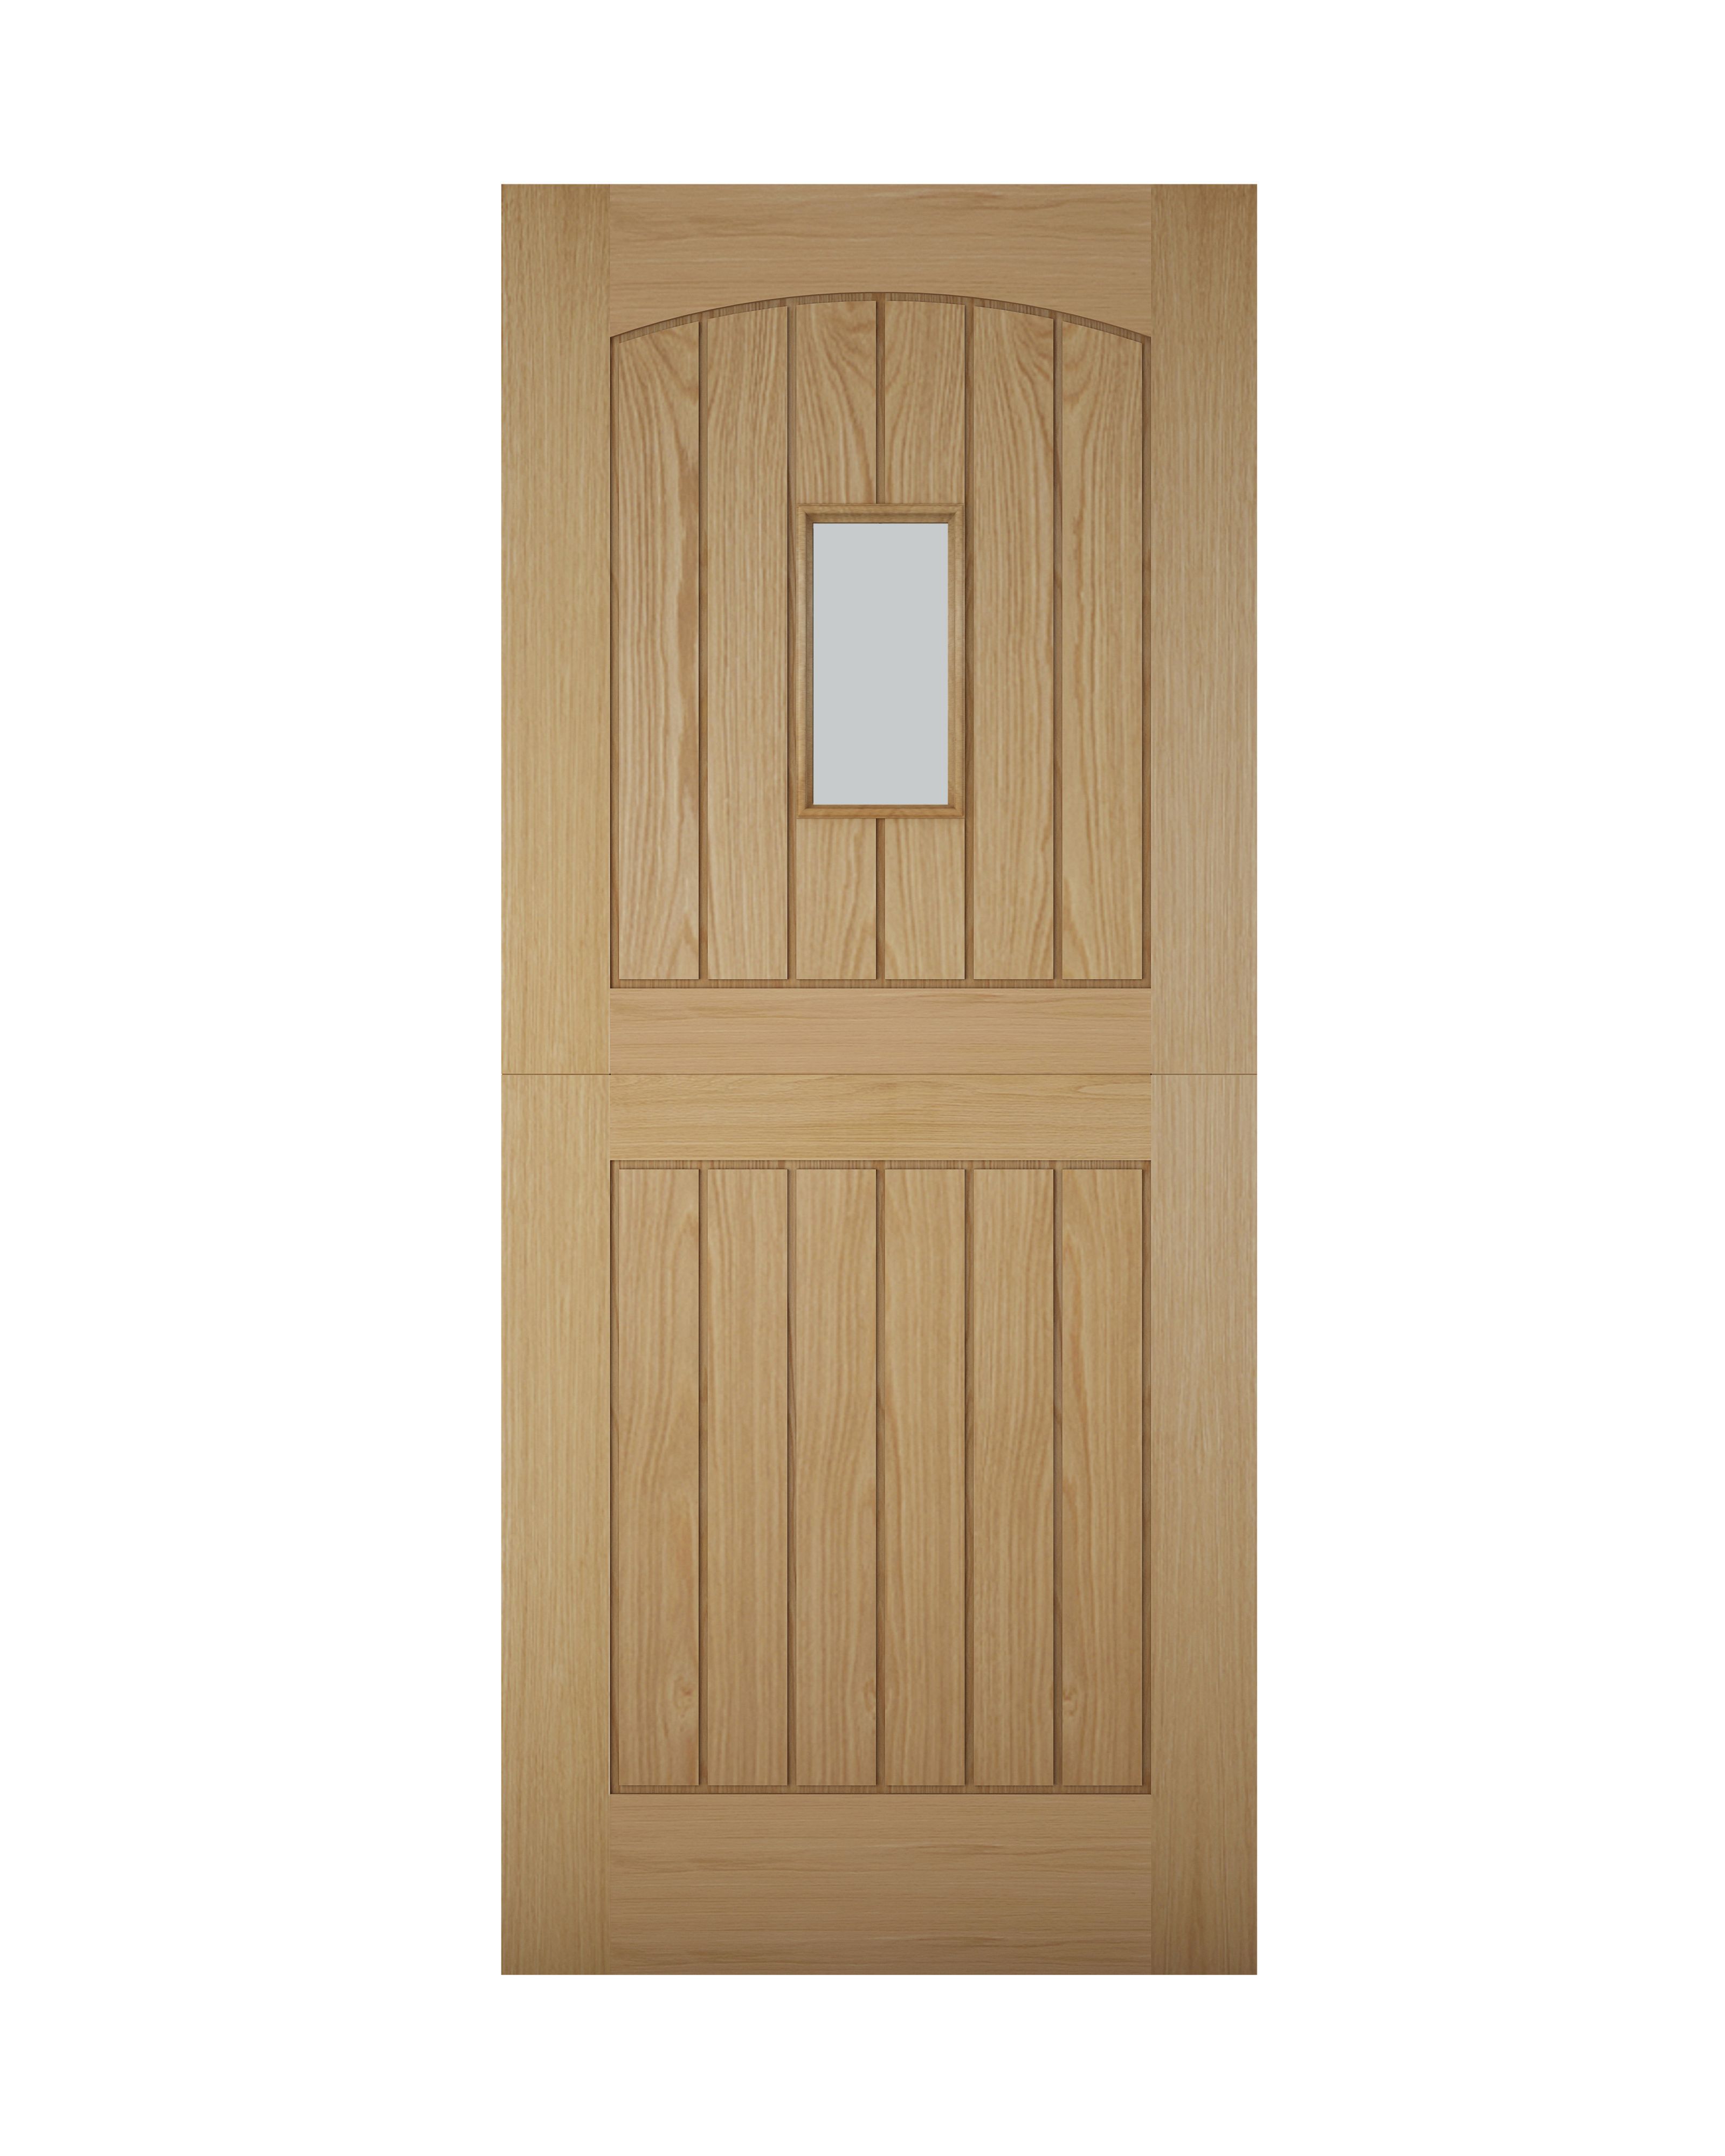 B&Q Stable Glazed Cottage White oak veneer Left & RHed Front door, (H)1981mm (W)762mm